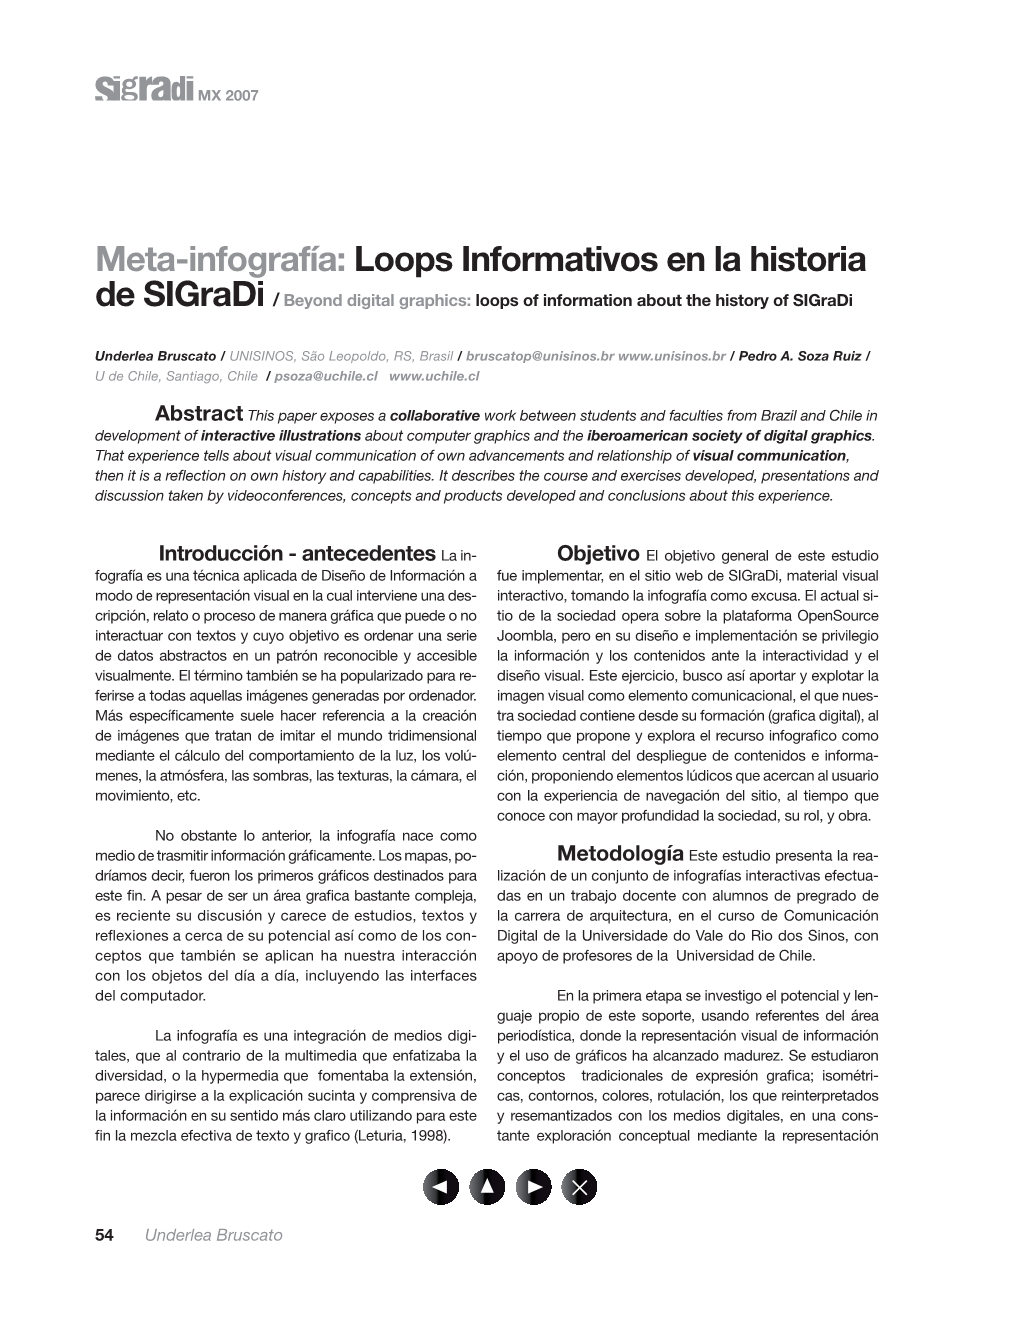 Meta-Infografía: Loops Informativos En La Historia De Sigradi / Beyond Digital Graphics: Loops of Information About the History of Sigradi